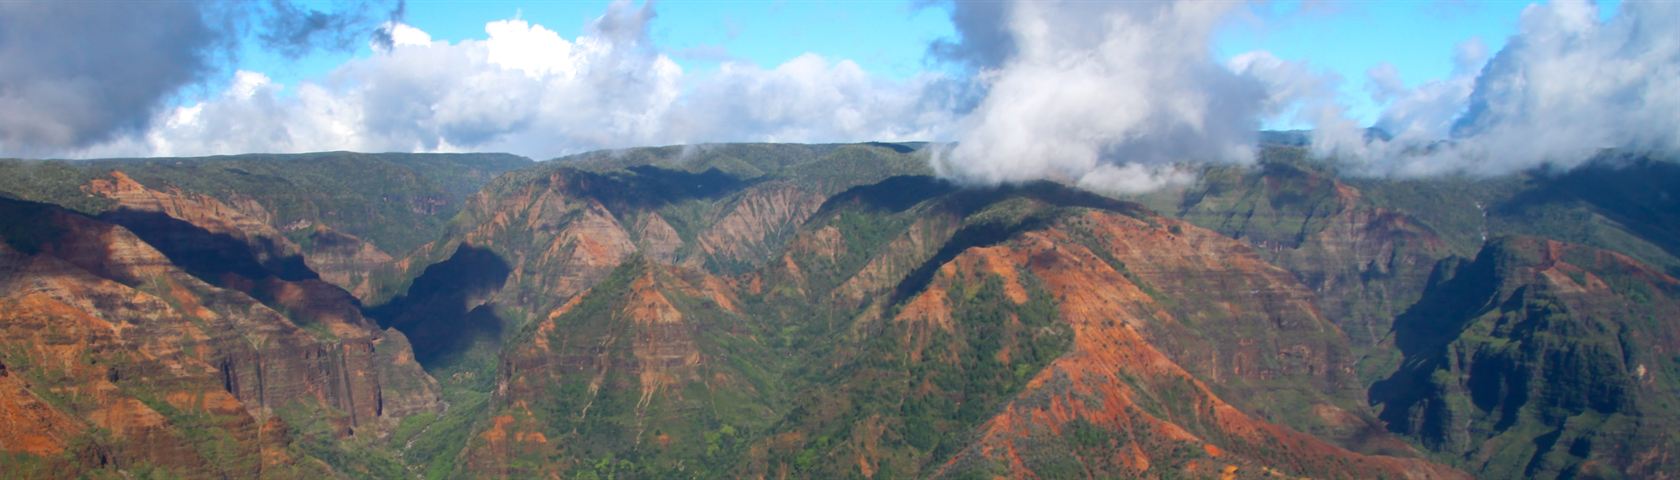 Kauai Mountain Range